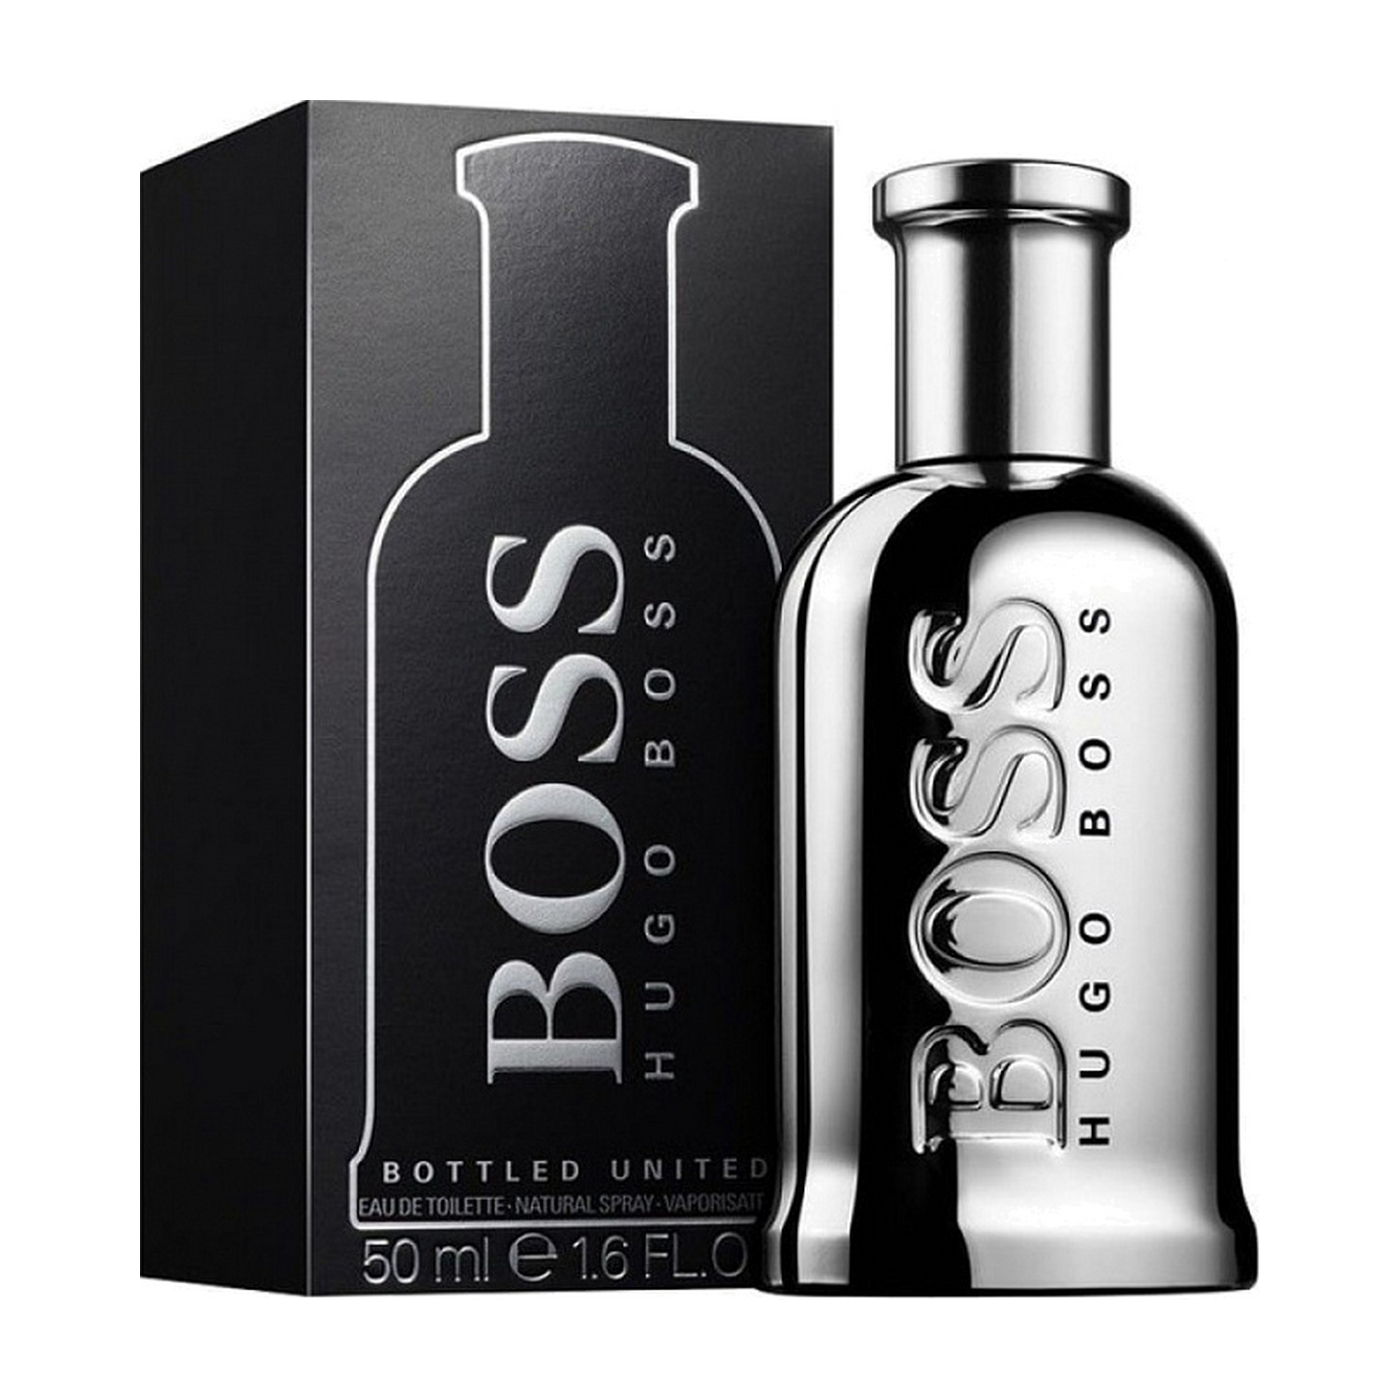 Хуго мужские. Boss Bottled Hugo Boss 100 мл. Туалетная вода Hugo Boss Bottled United le, 100 мл. Hugo Boss Boss Bottled EDT, 100 ml. Hugo Boss Boss EDT 100 ml.